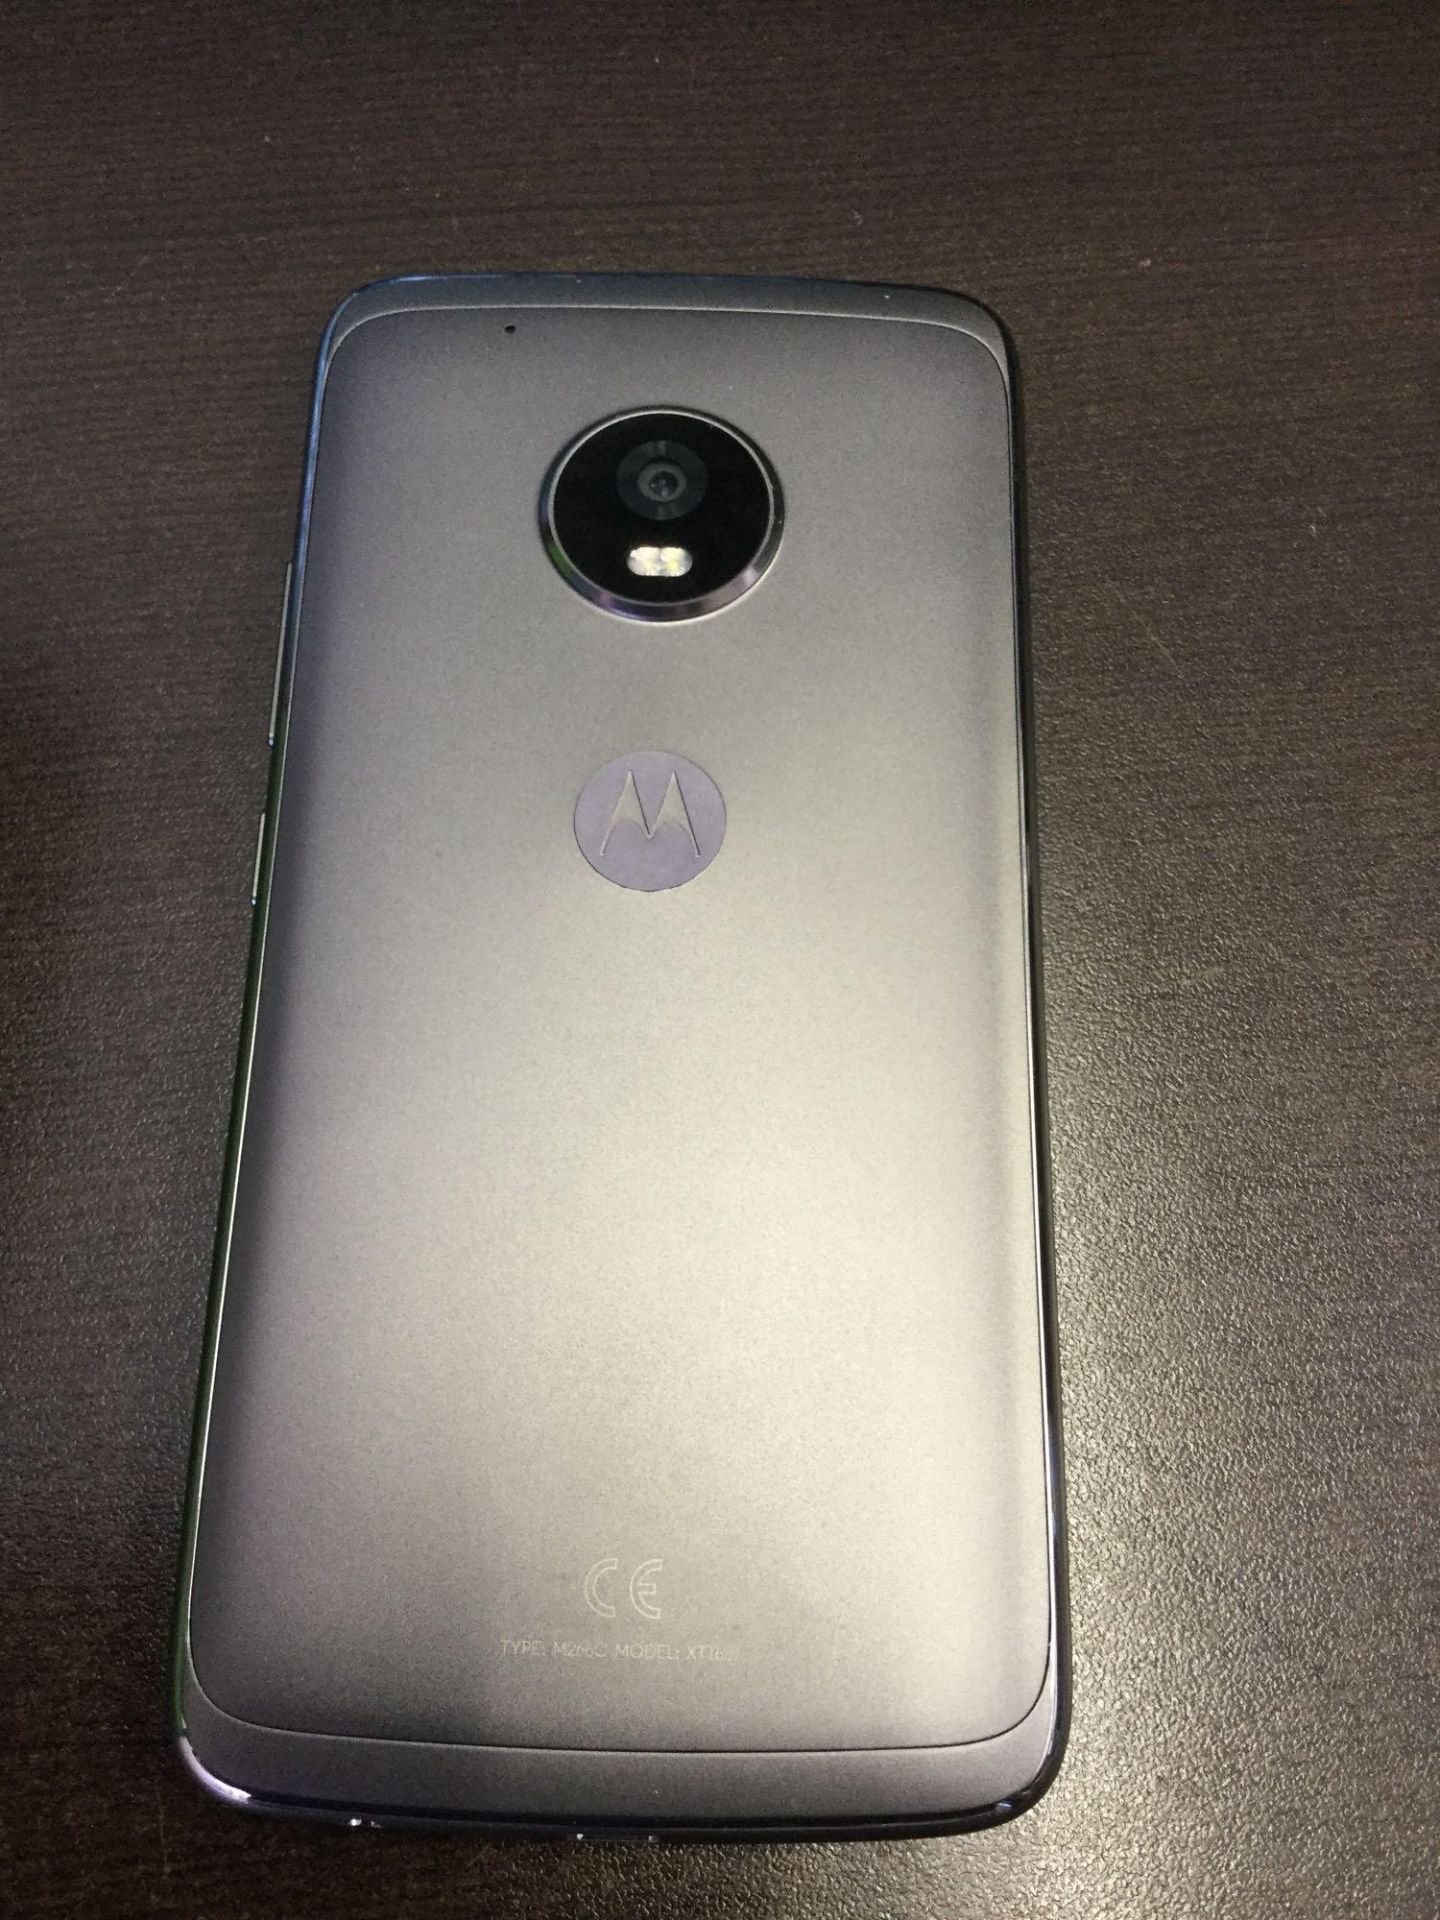 Motorola XT1687 Motot G5 Plus - 32 GB Smart Phone- Lunar Gray - Image 4 of 4